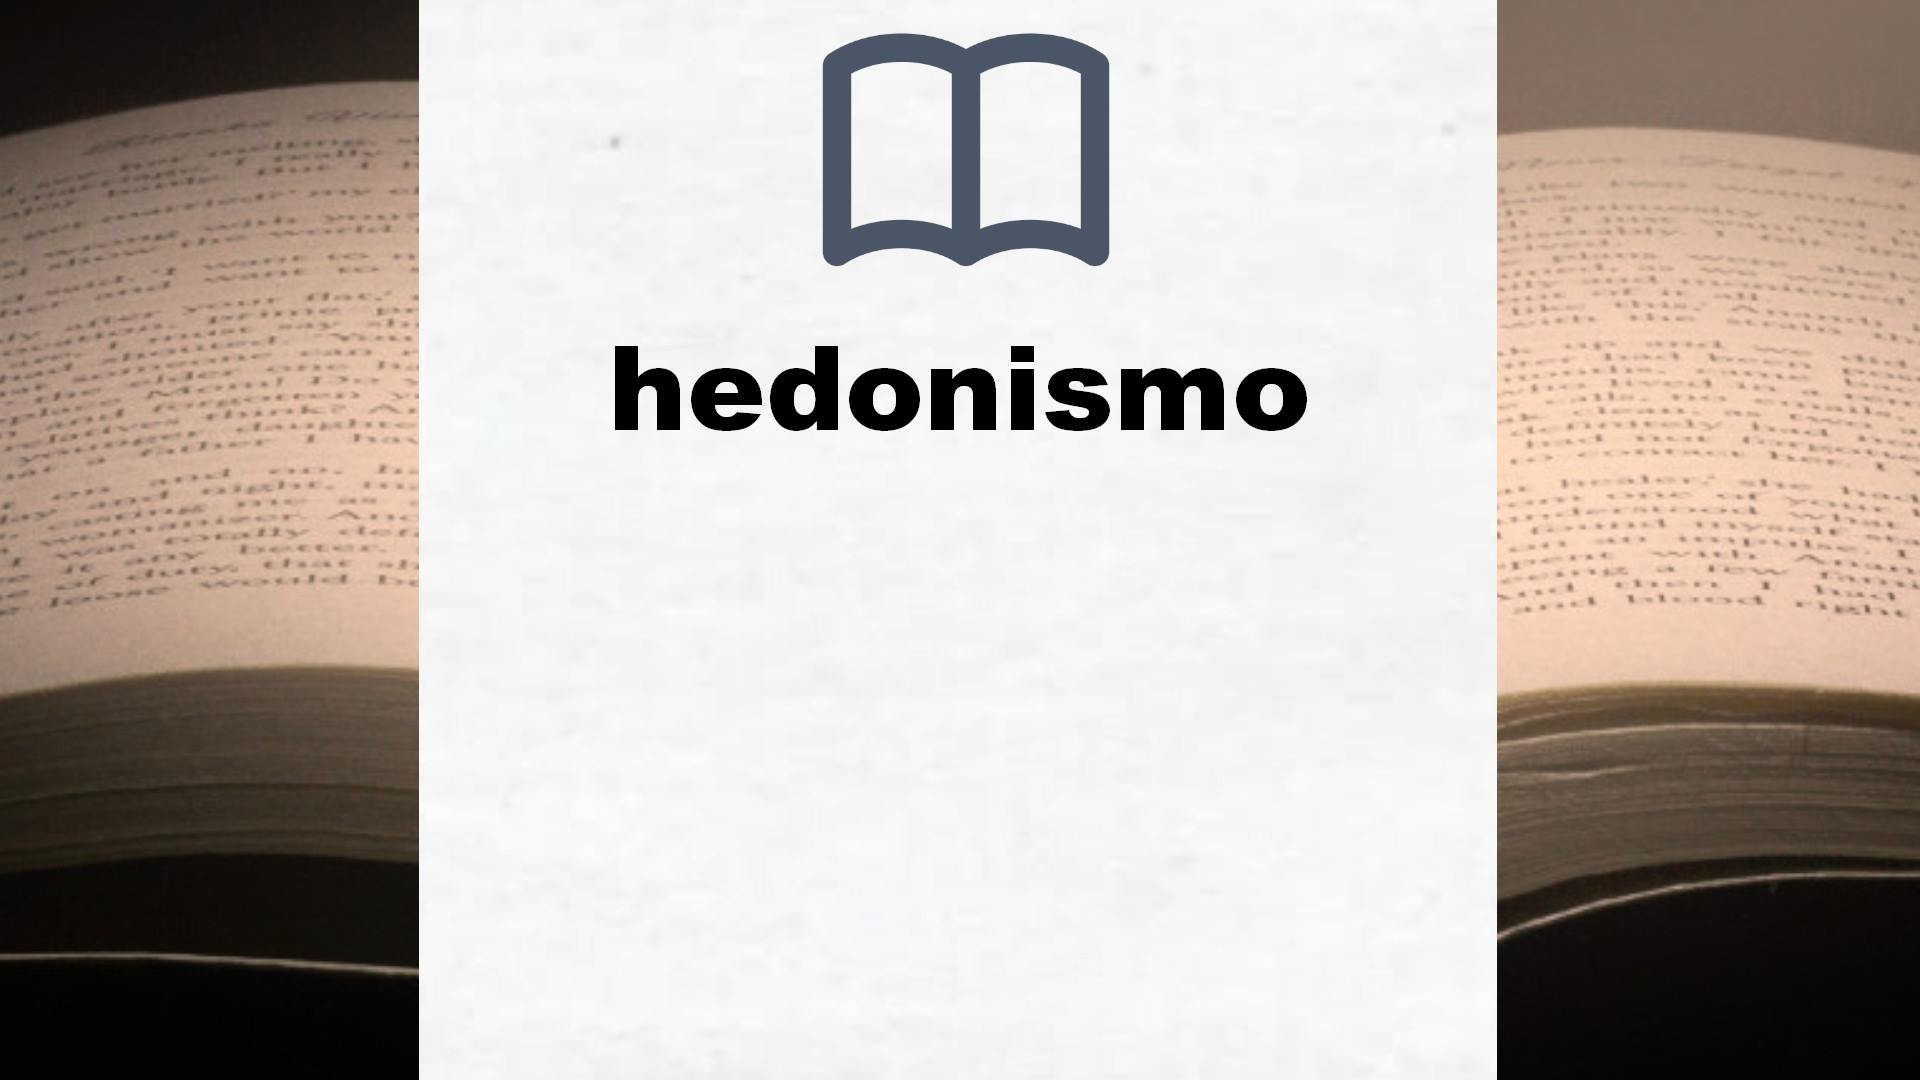 Libros sobre hedonismo